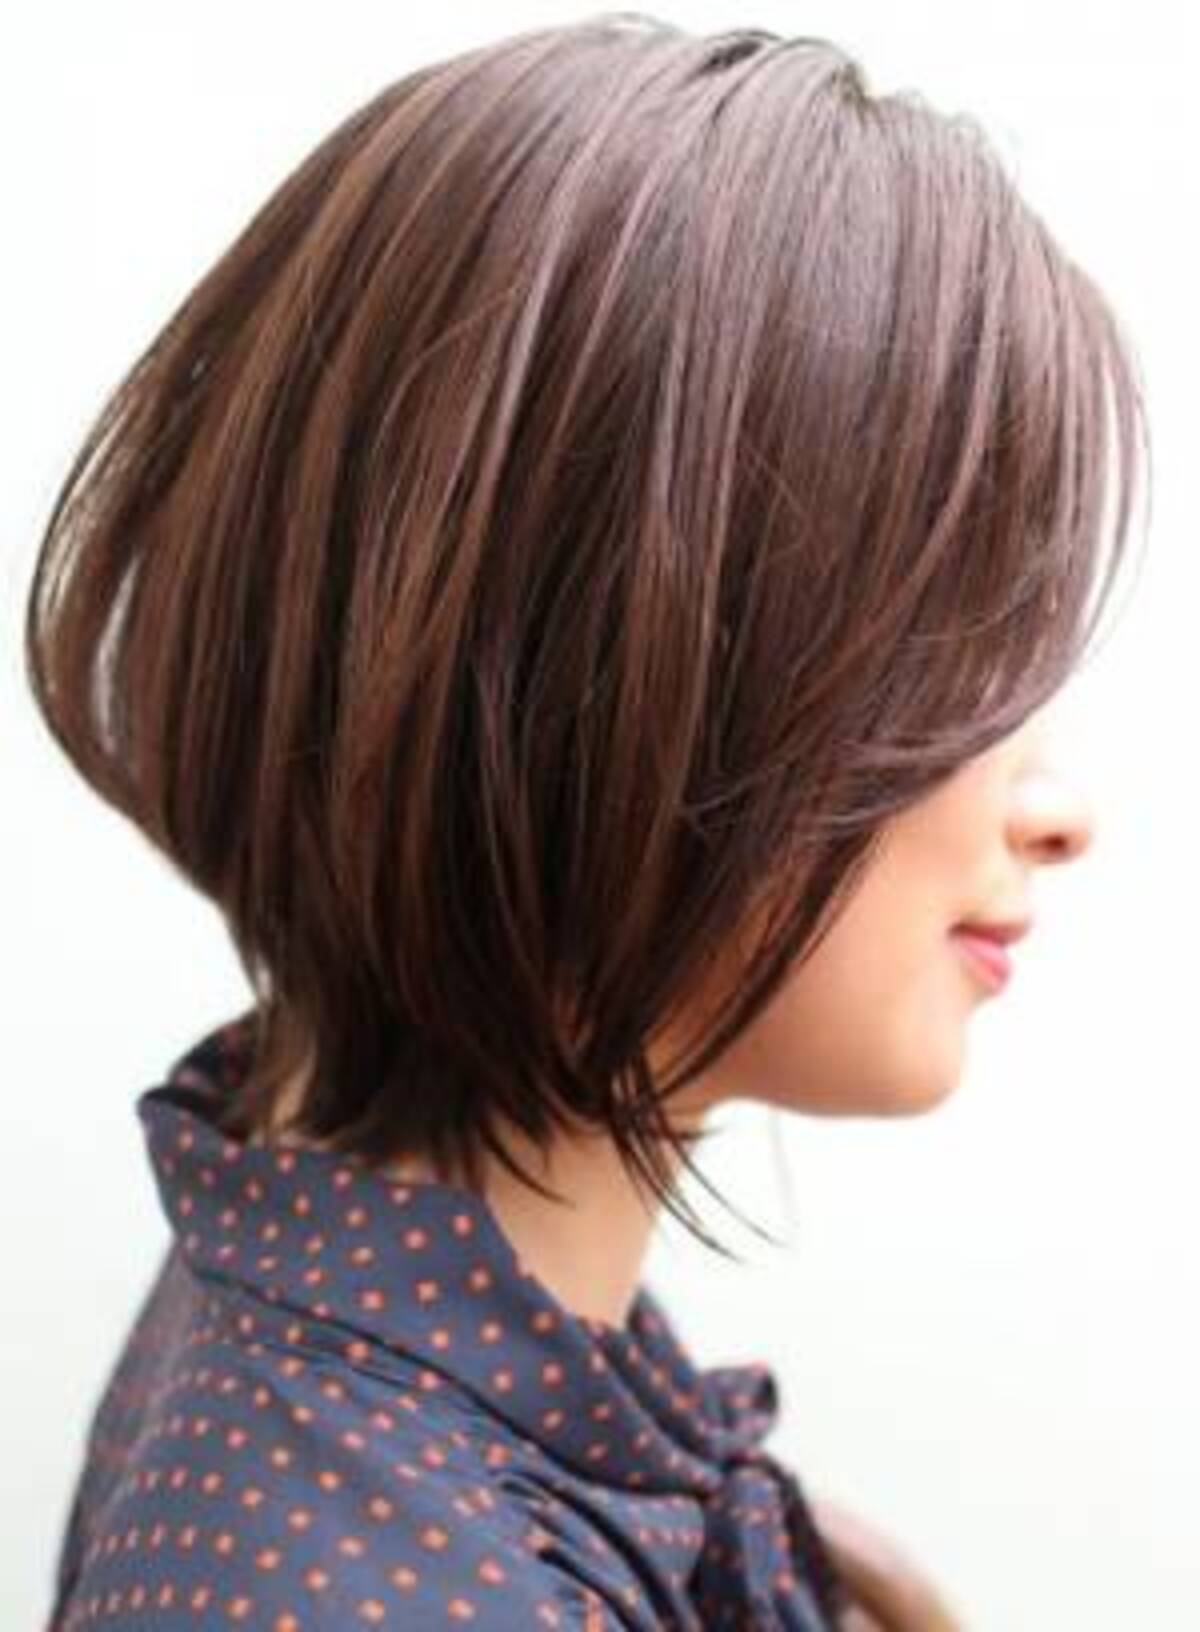 ユニーク 40 代 髪型 辺見 えみり 風 最高のヘアスタイルのアイデア